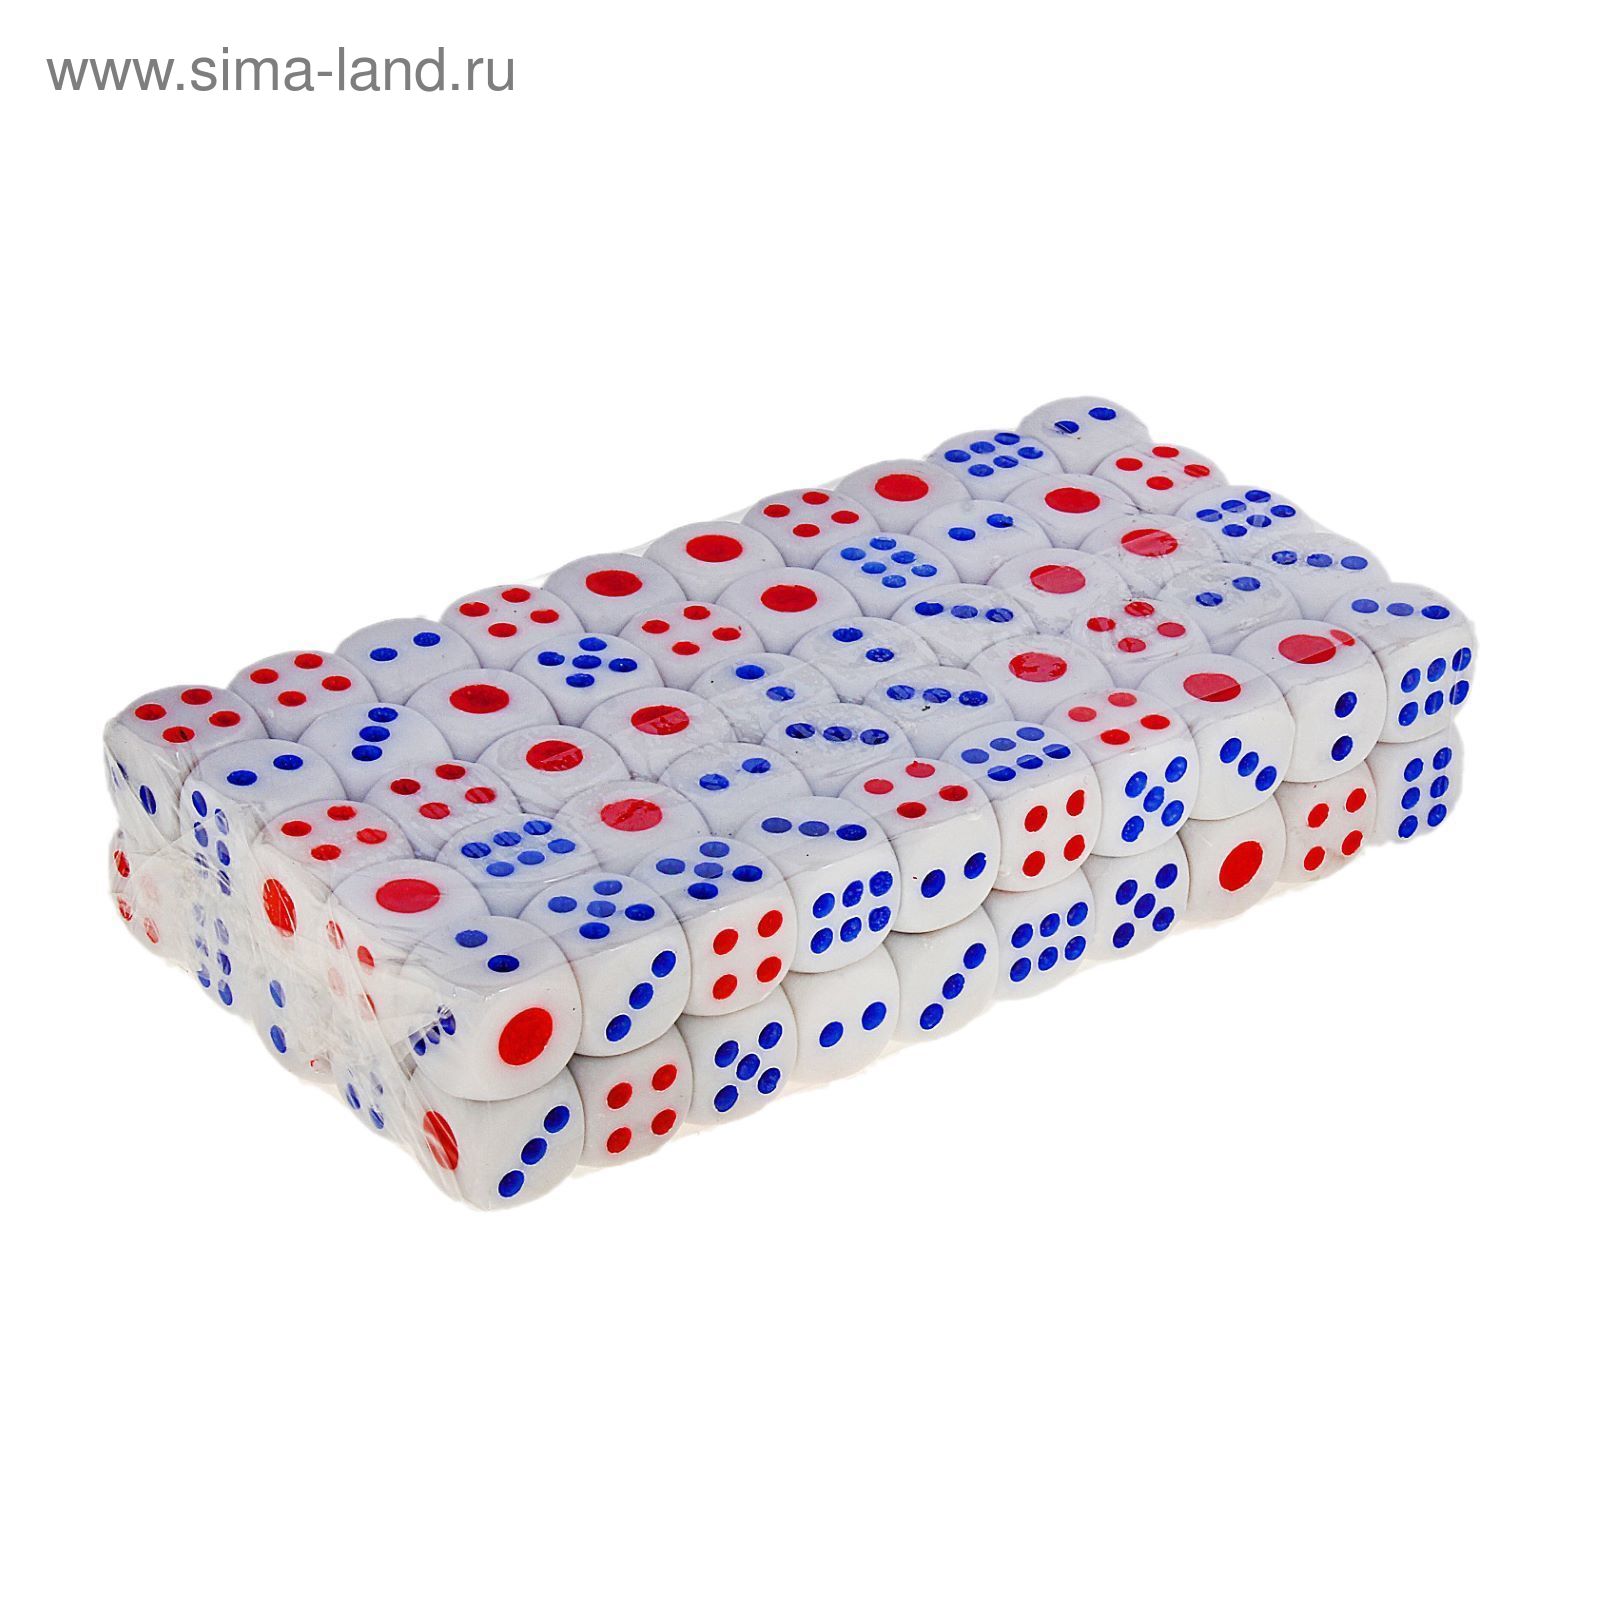 Кости игральные 1,2 × 1,2 см, белые с цветными точками, фасовка 100 шт.